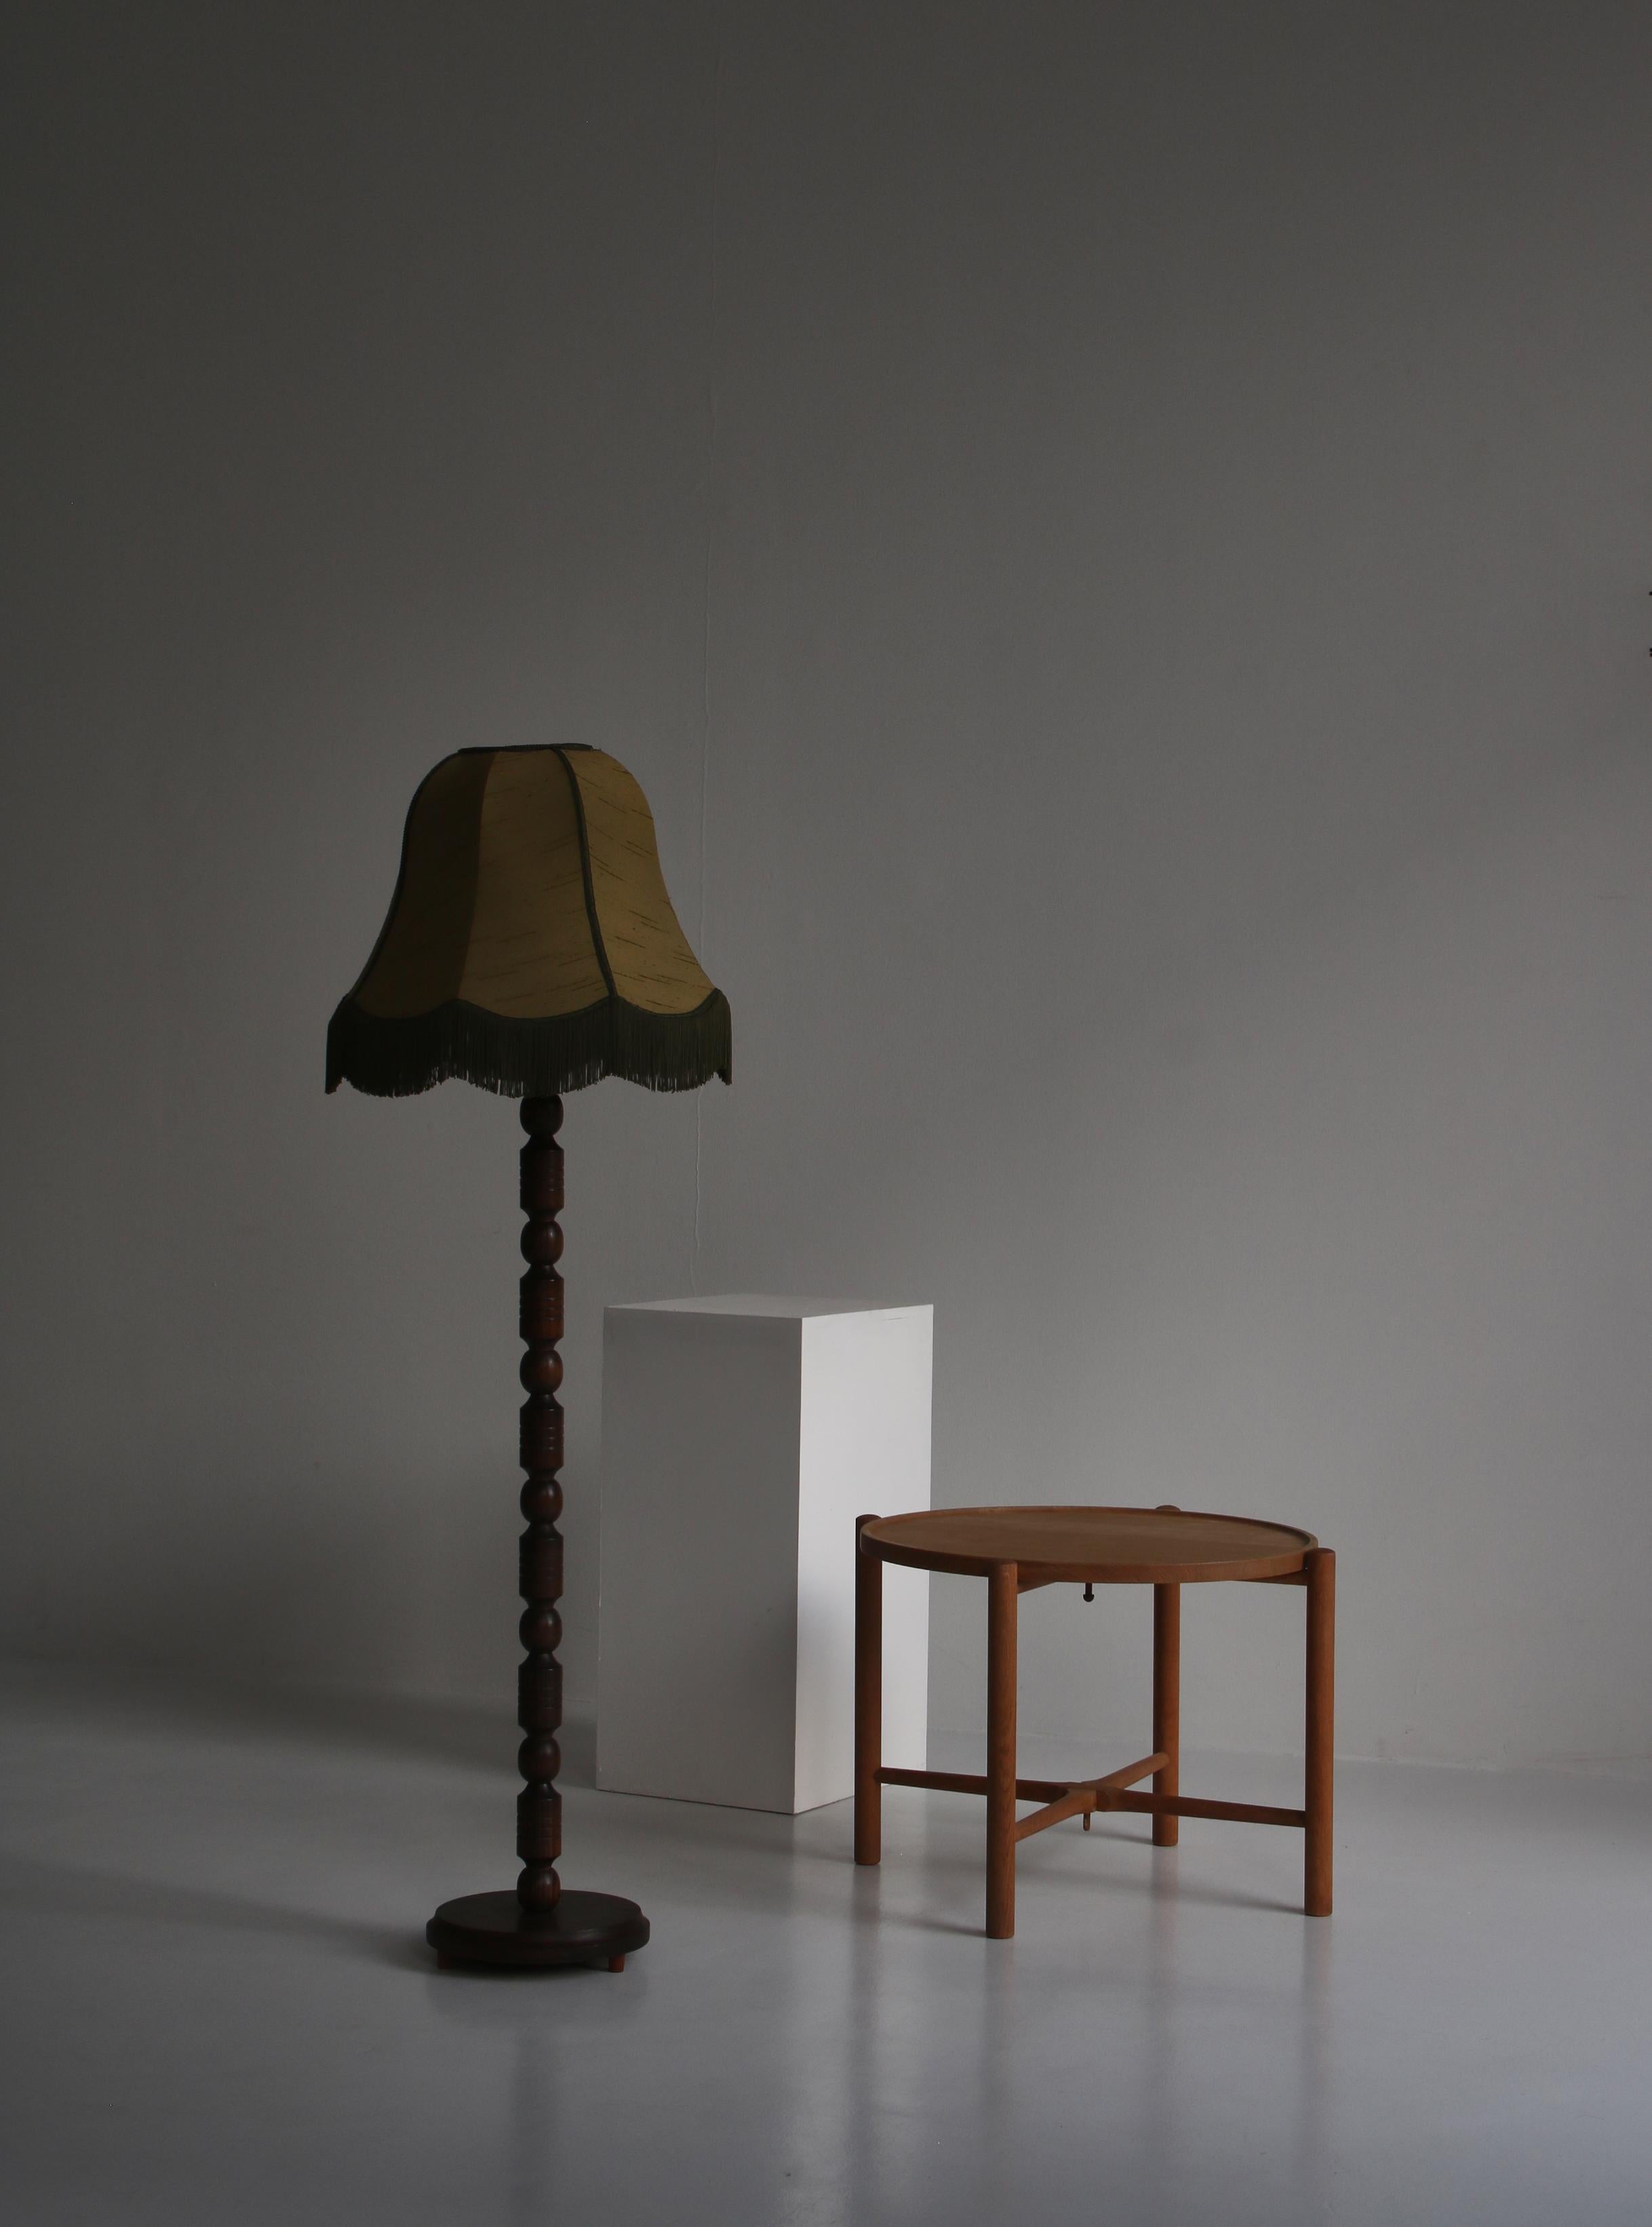 Belle lampe ancienne fabriquée au Danemark dans les années 1930 dans le style Art Déco. La lampe est fabriquée en bois de pin teinté foncé tourné et l'abat-jour est en soie verte avec des franges.